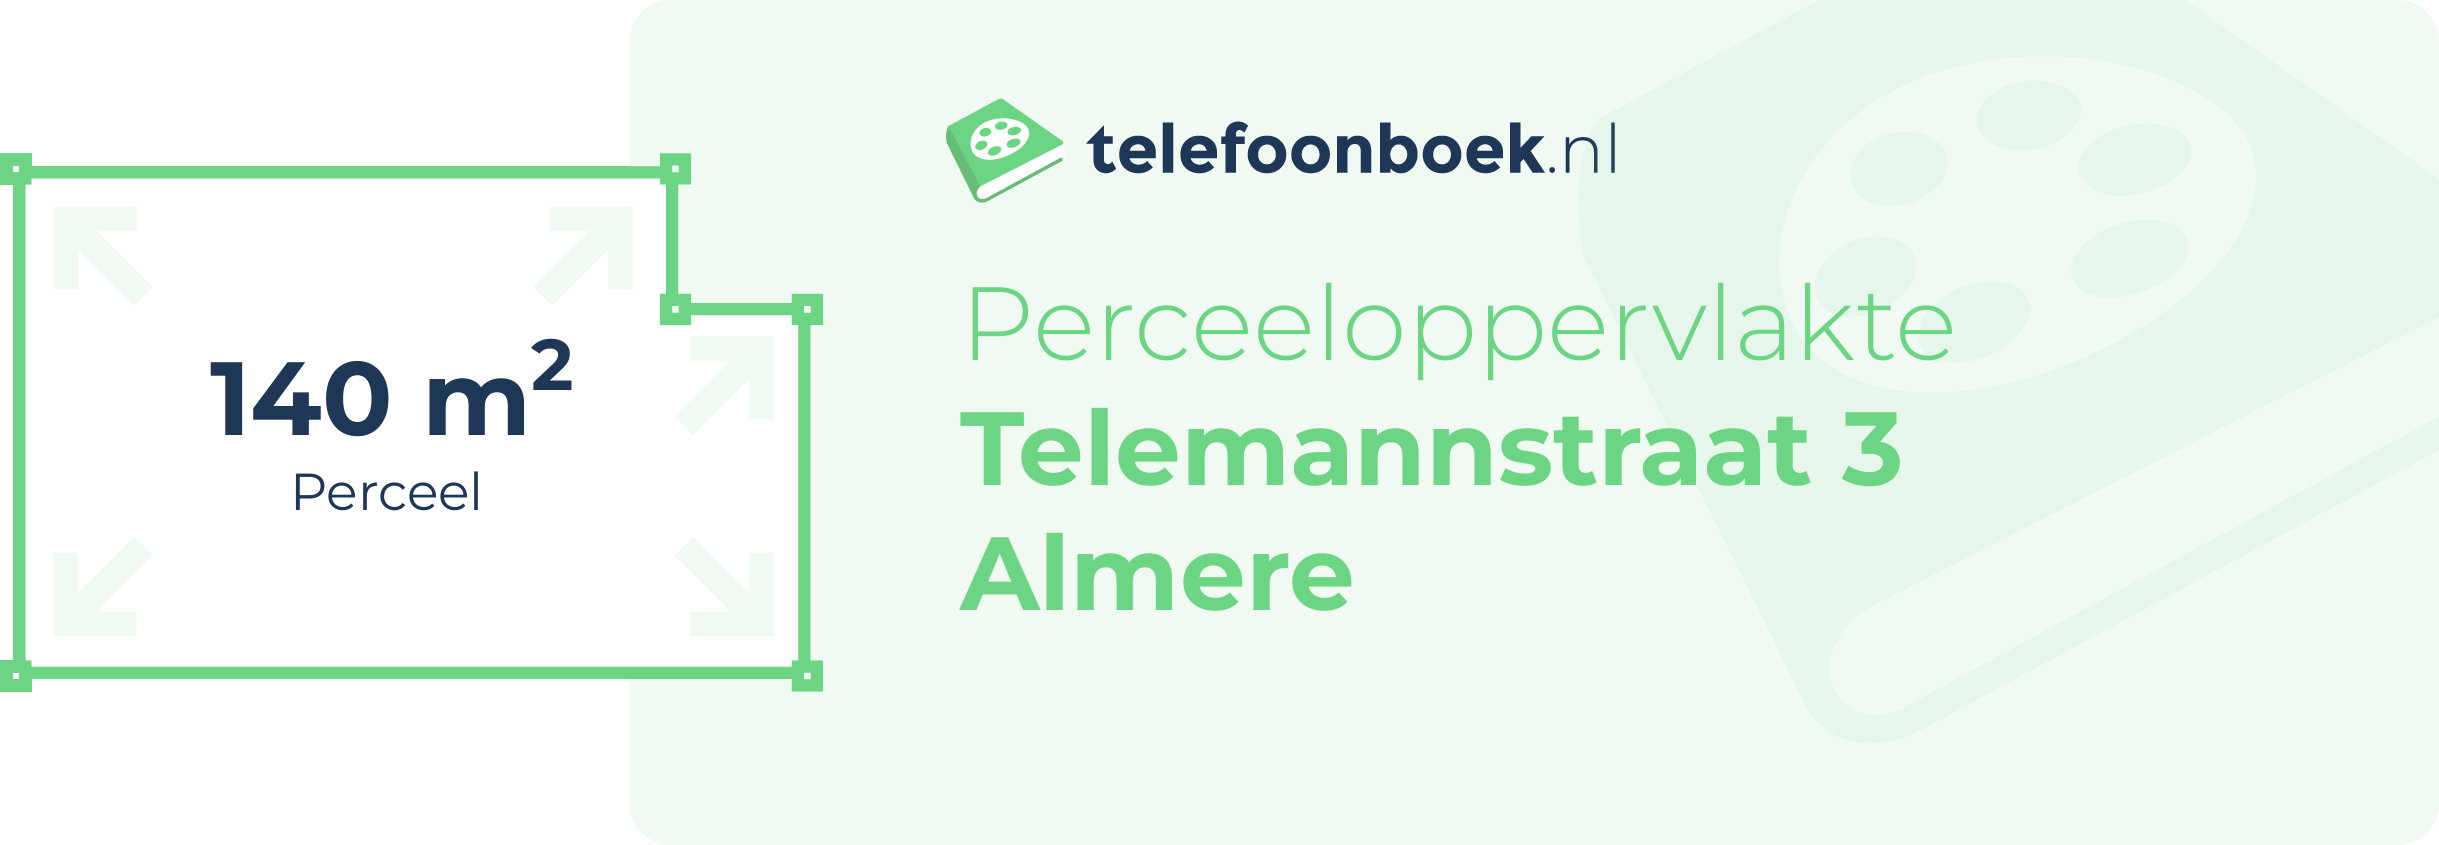 Perceeloppervlakte Telemannstraat 3 Almere